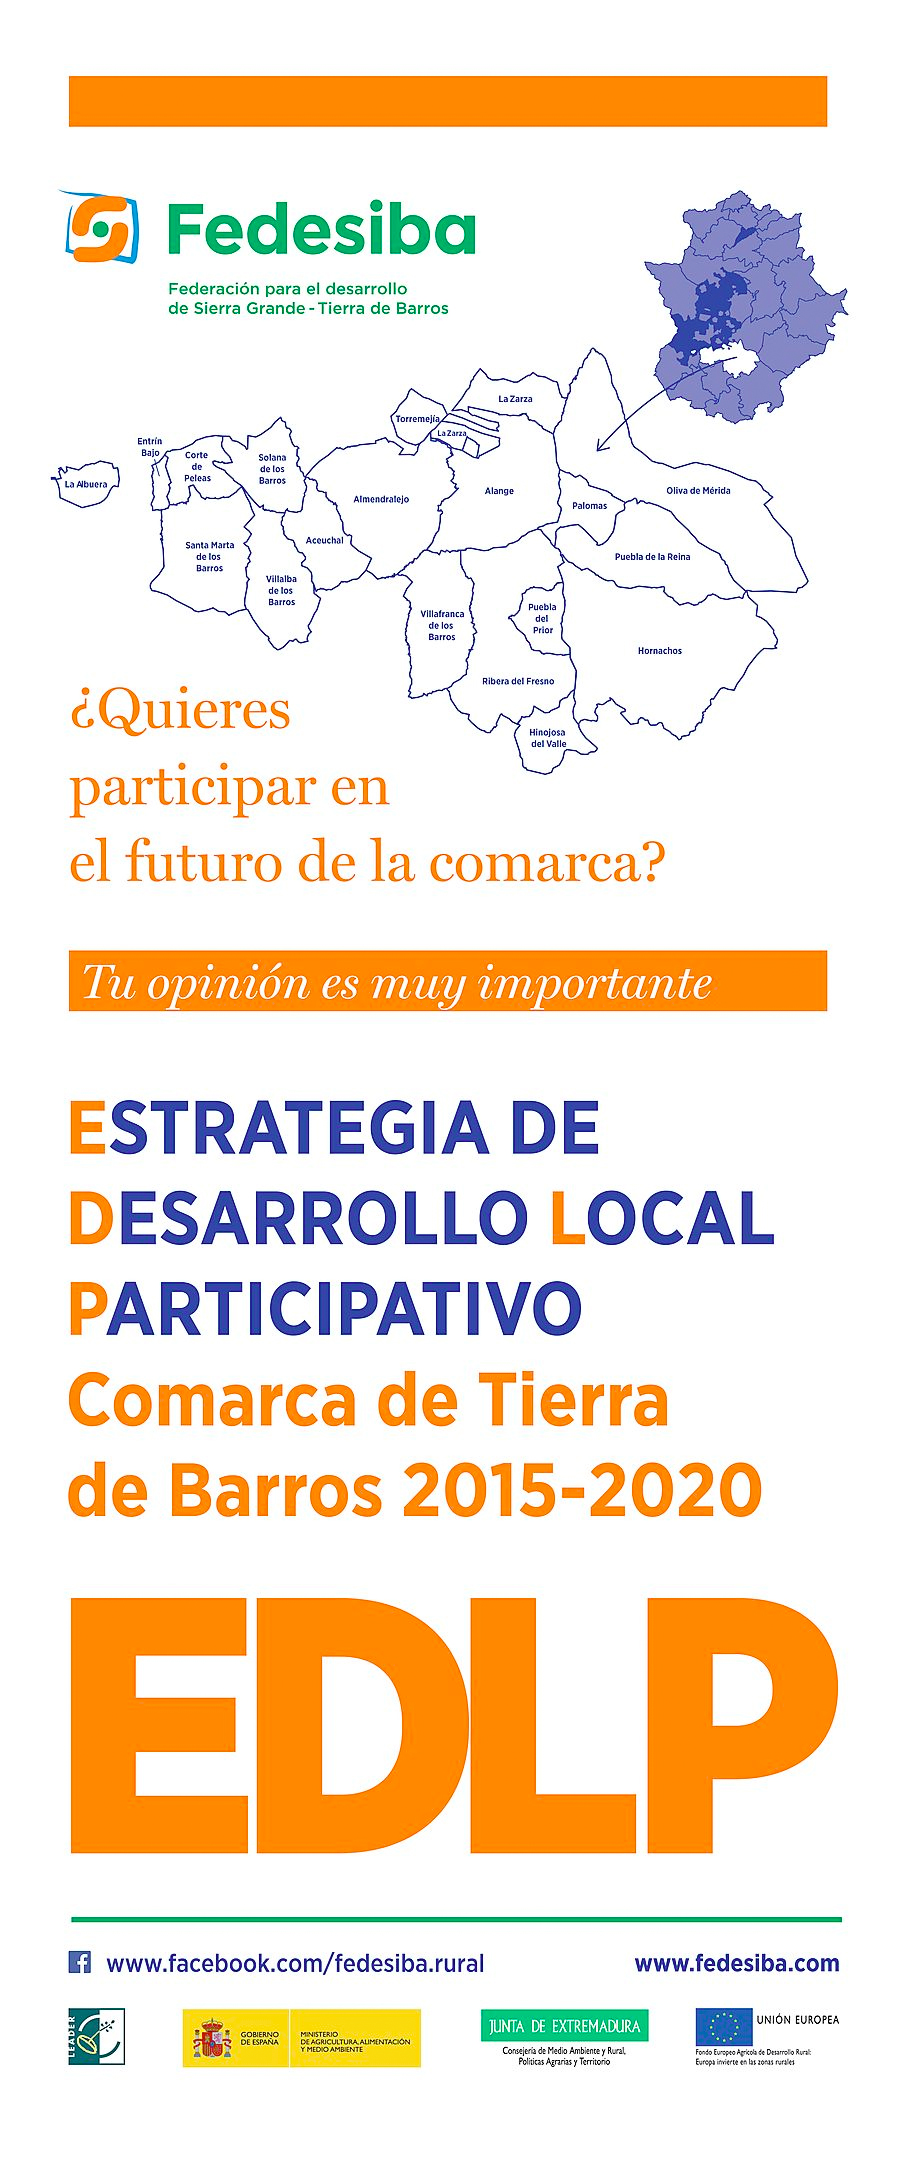 FEDESIBA se encuentra en la fase final de elaboración de su estrategia de desarrollo local participativo 2015-2020